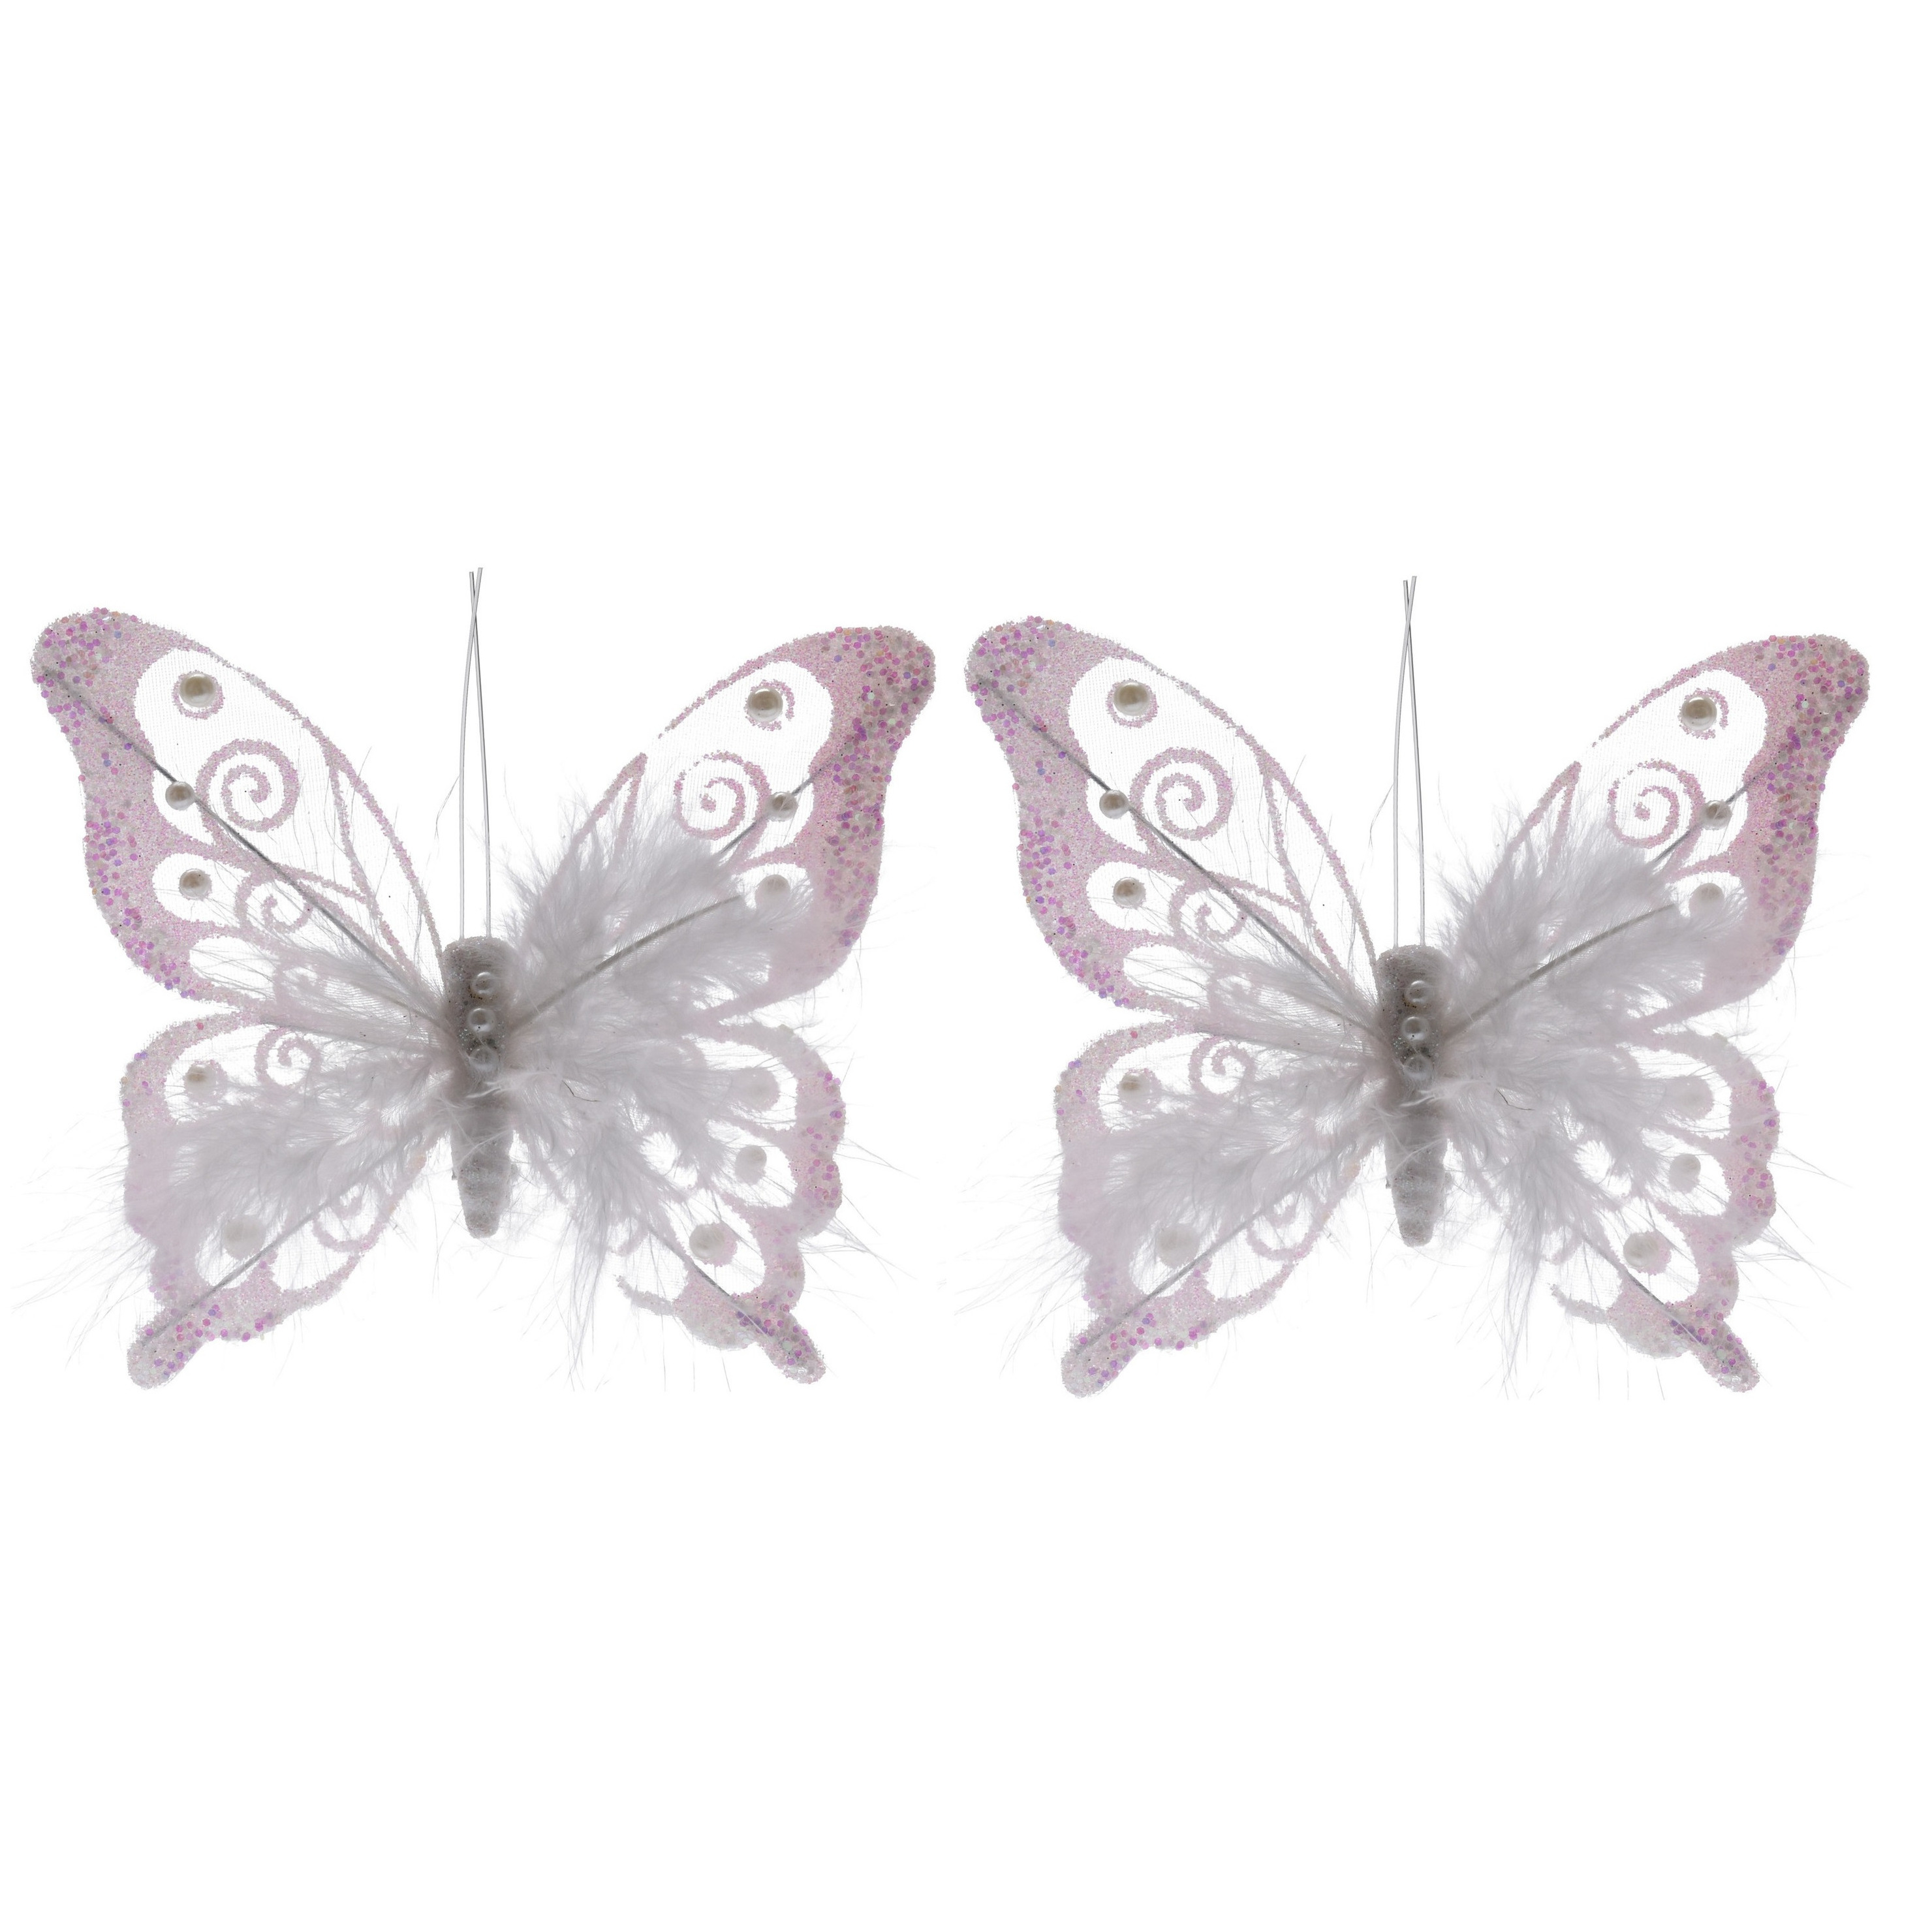 2x Witte decoratie vlinders op clip 15,5 cm